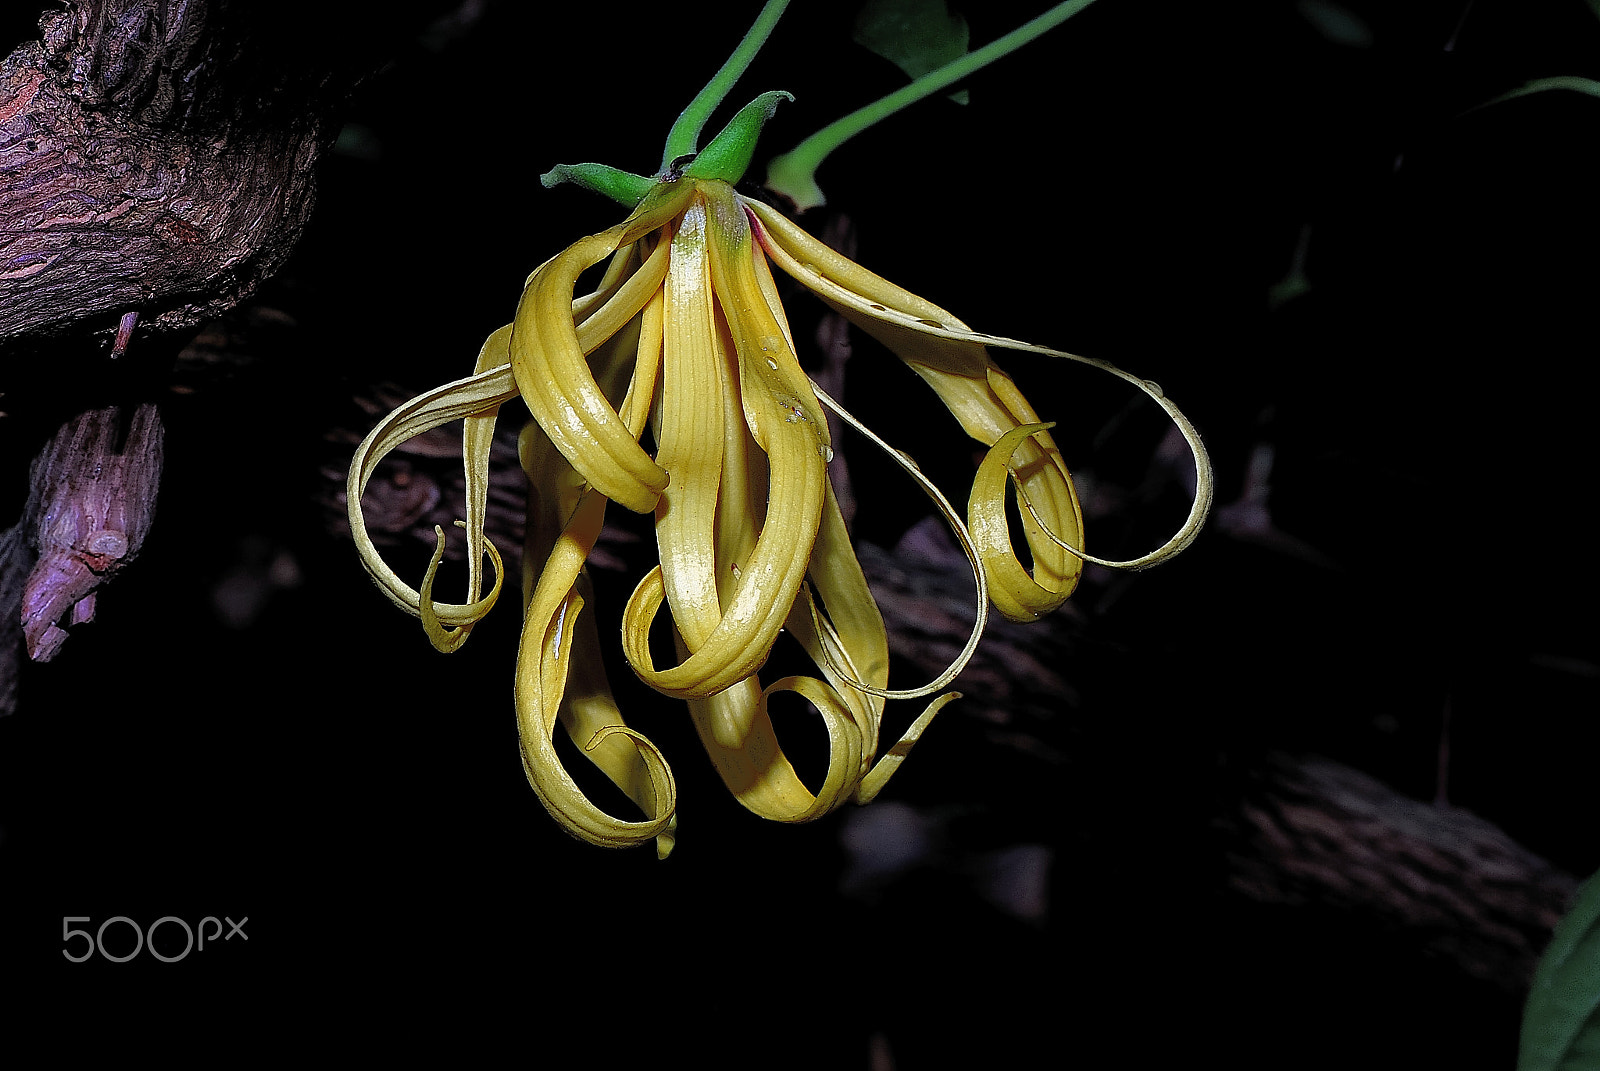 Nikon D200 sample photo. Ilang-ilang-flower (cananga odorata) photography